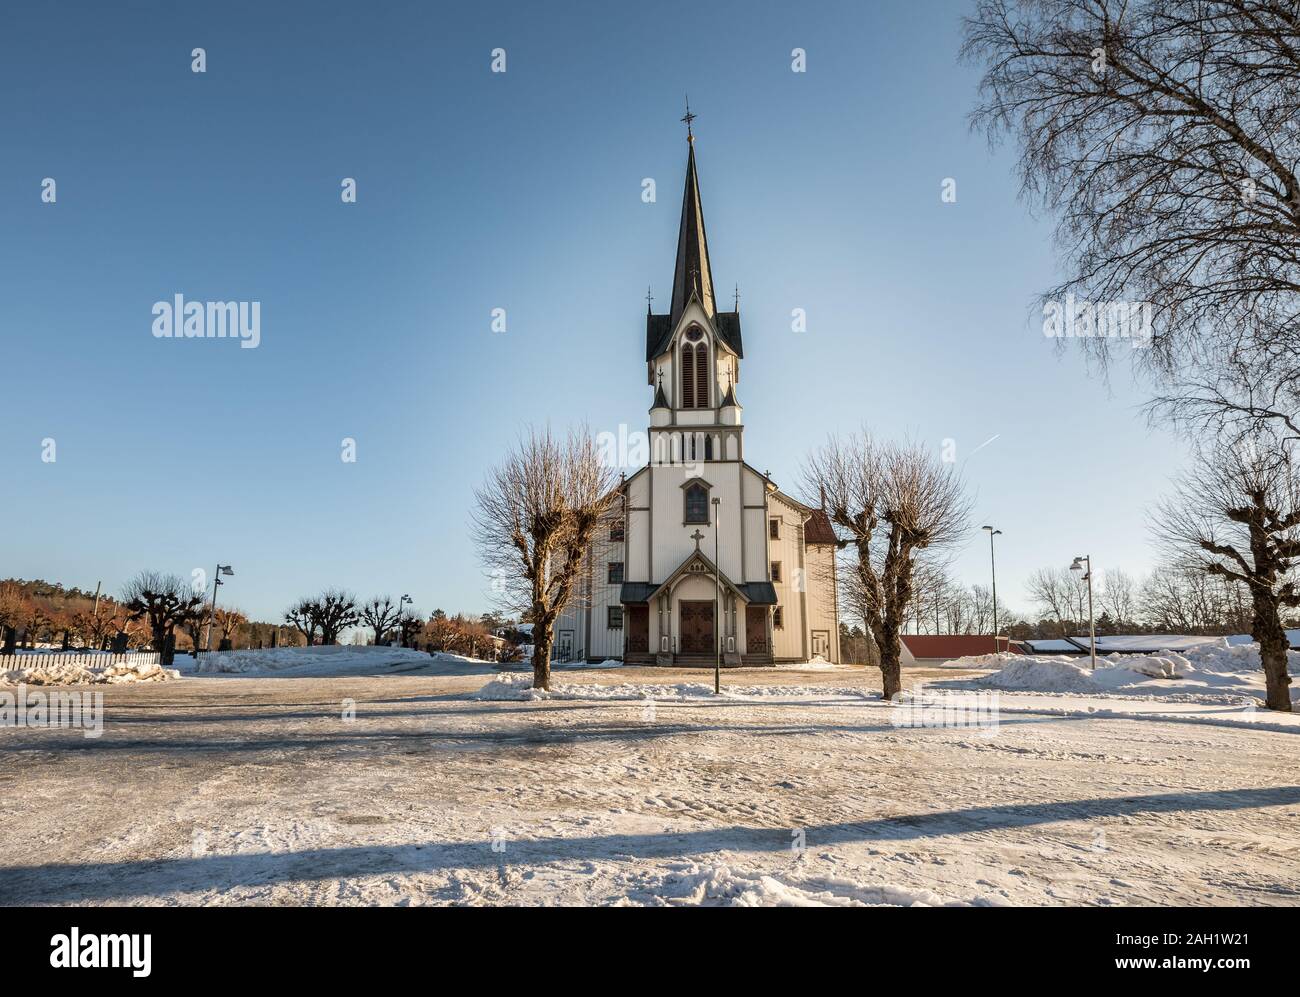 Église Bamble, grande église en bois buildt en 1845. L'hiver, la neige, ciel bleu. Vue de face. Image horizontale. Banque D'Images